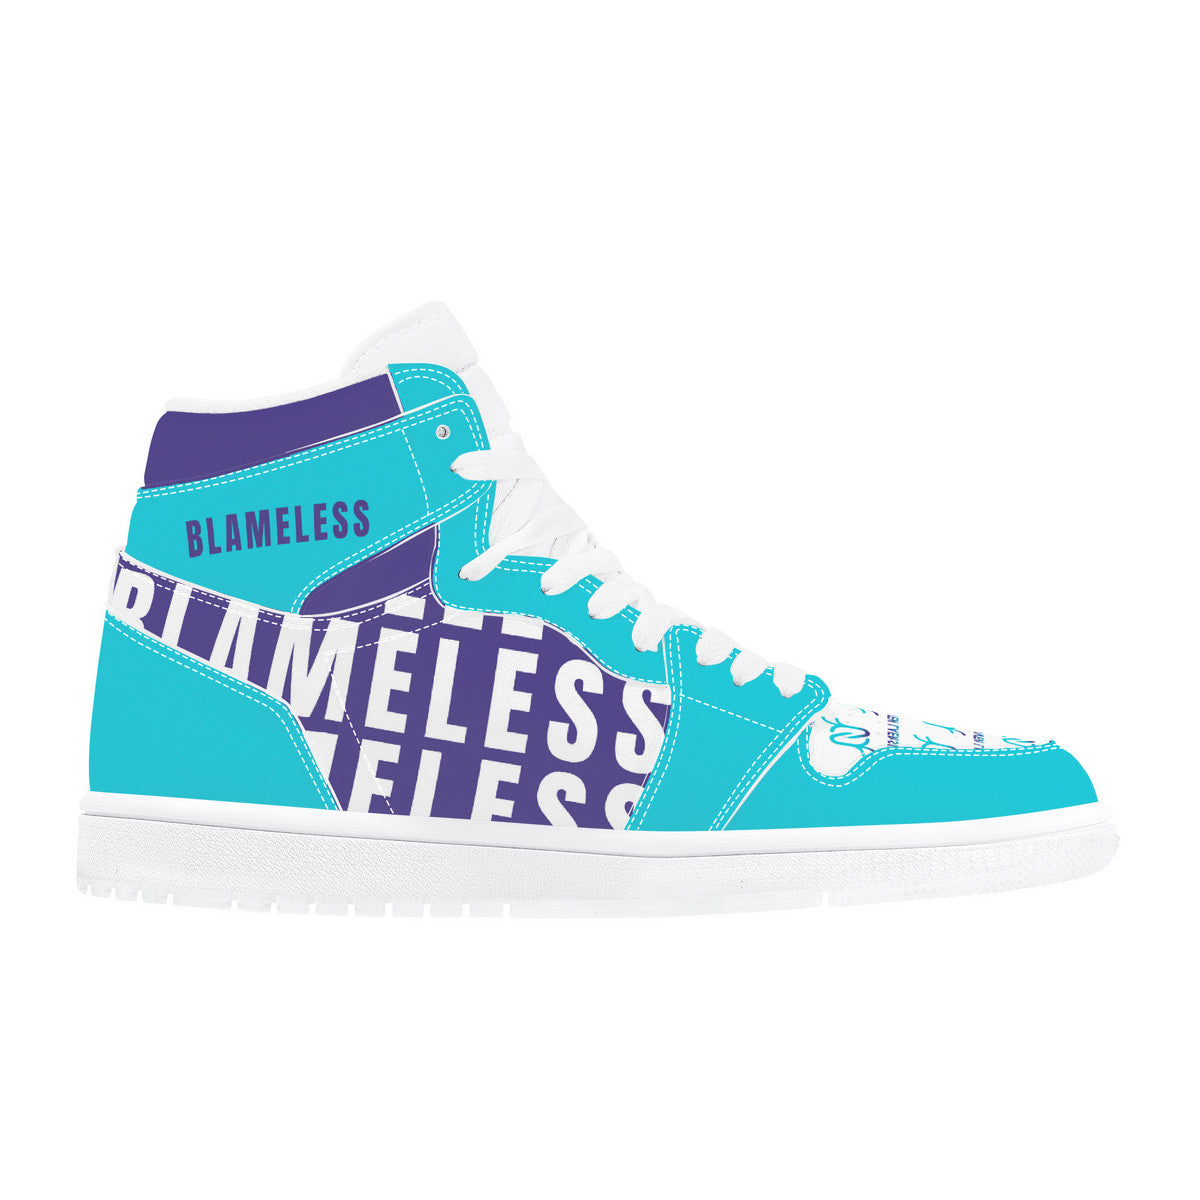 Blameless | Custom Cool Shoes | Shoe Zero